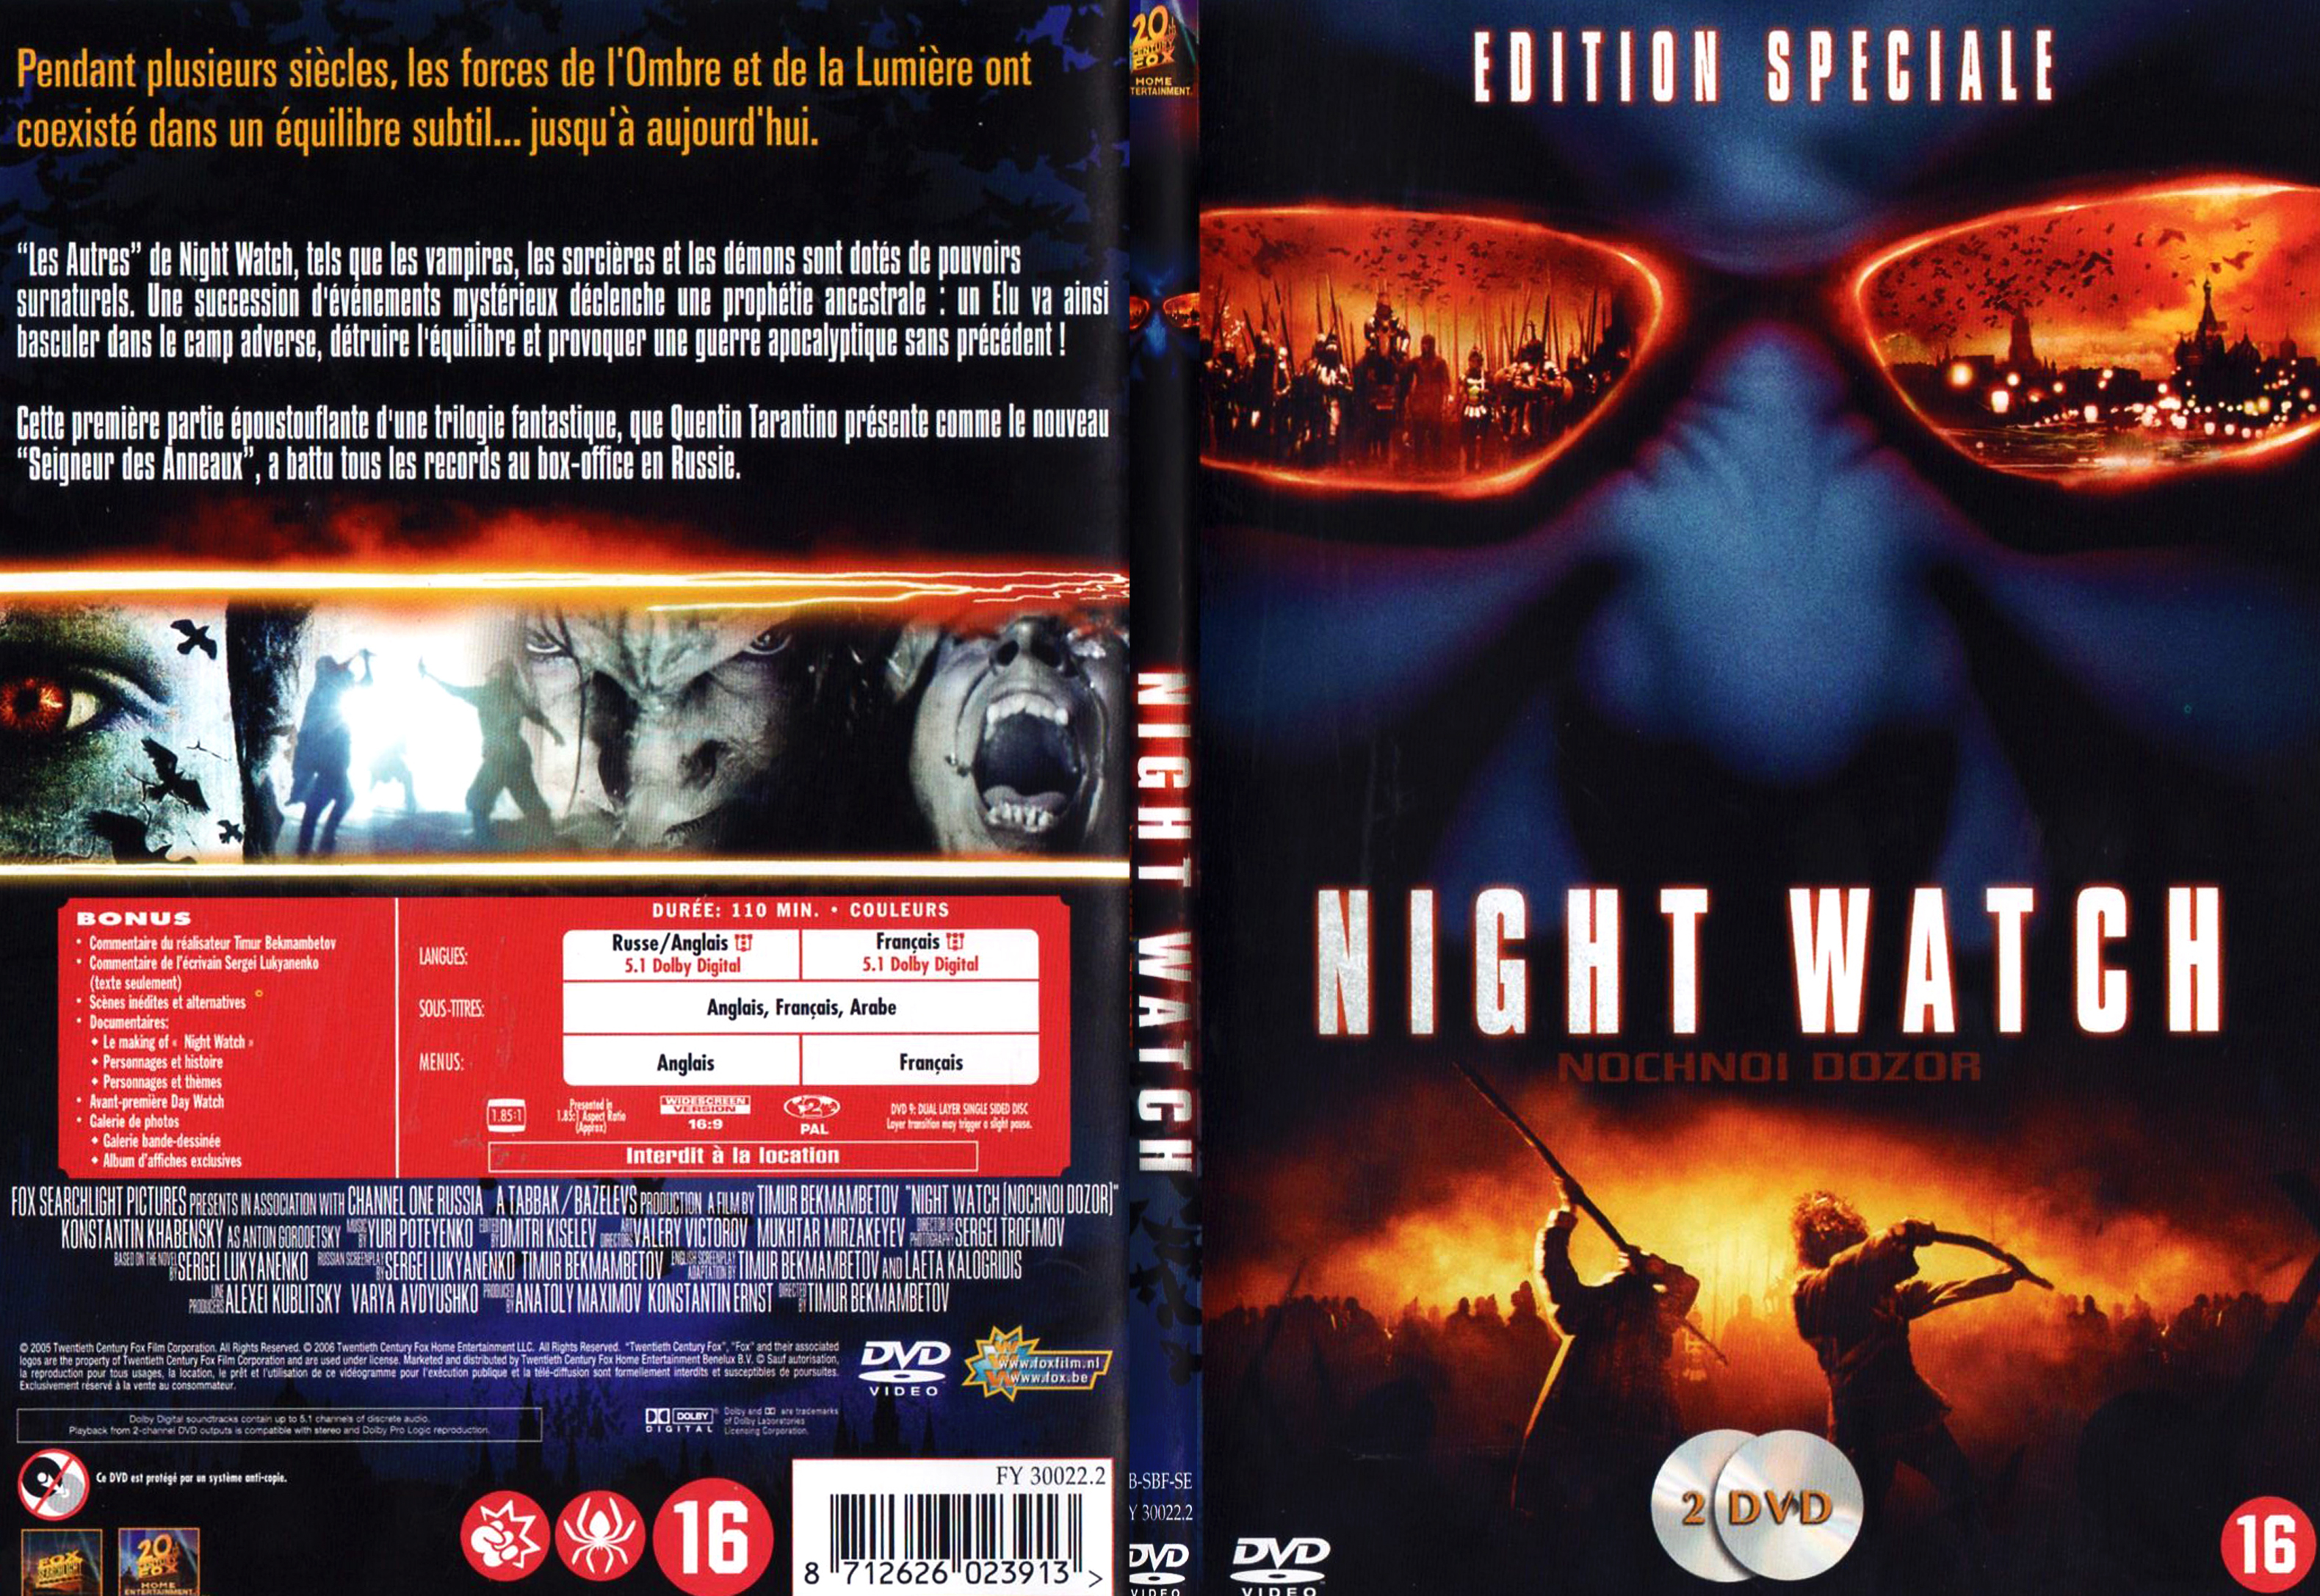 Jaquette DVD Night watch - SLIM v2